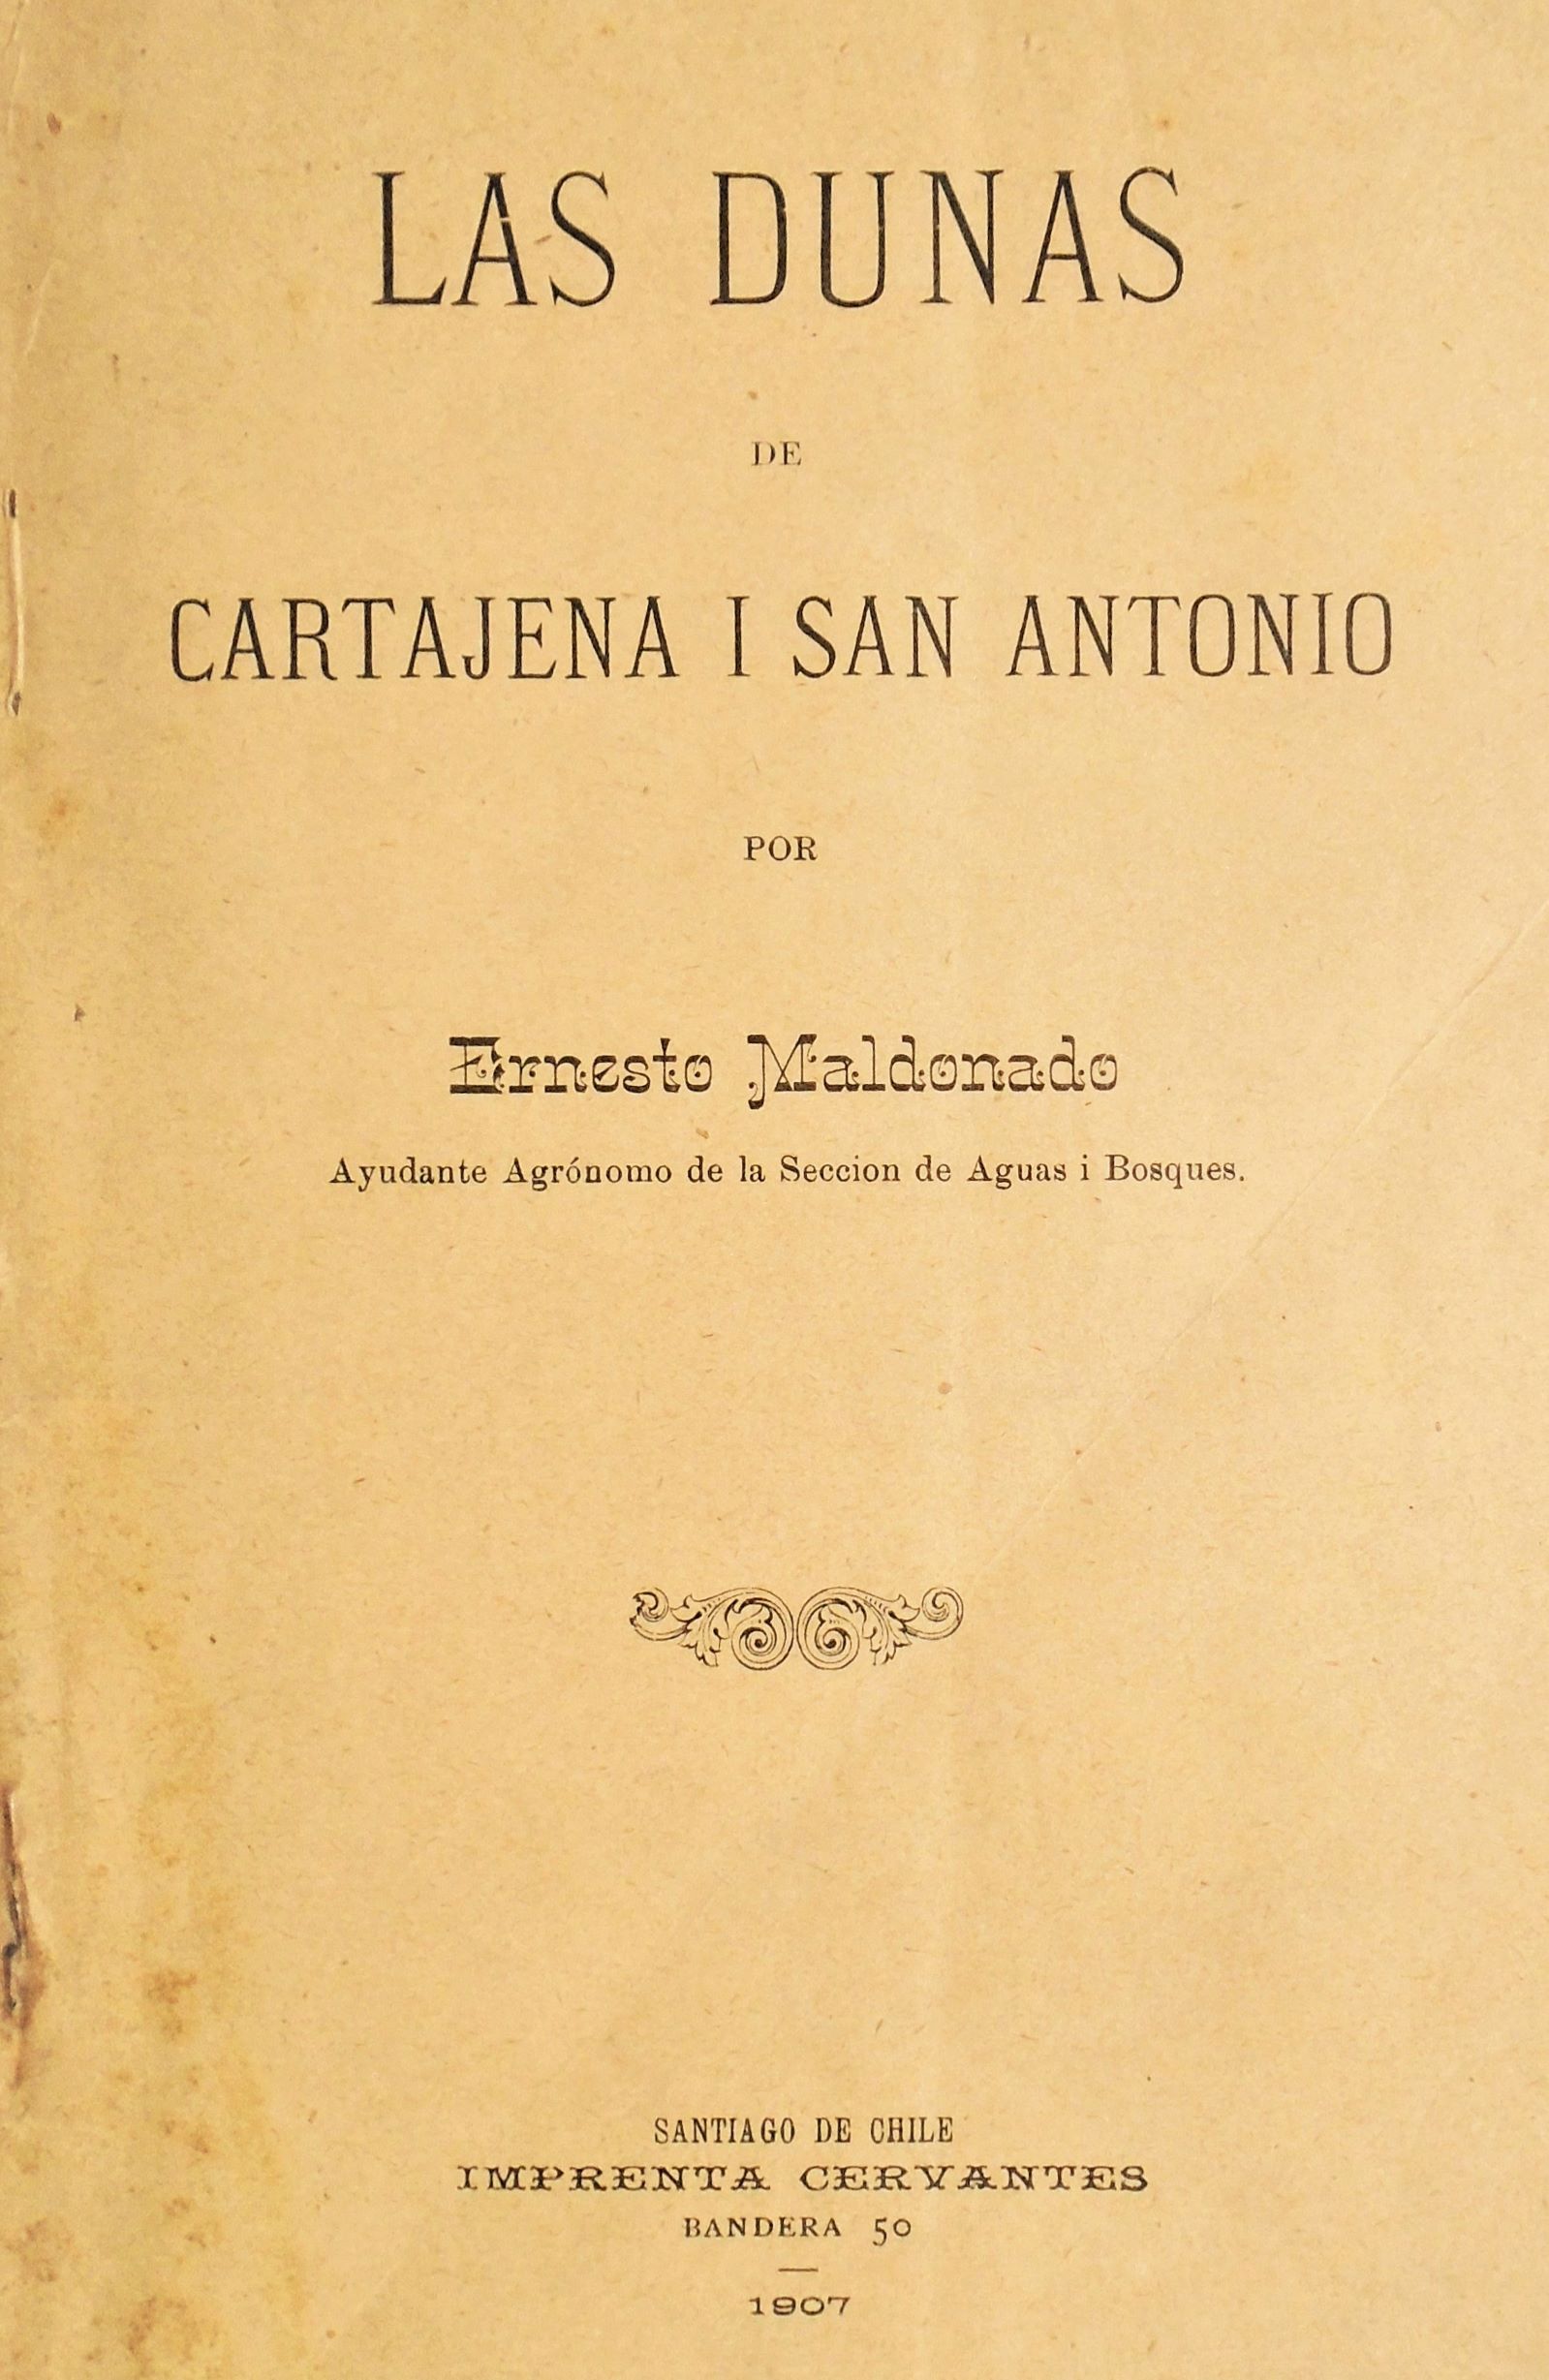 Ernesto Maldonado - Las dunas de Cartajena i San Antonio